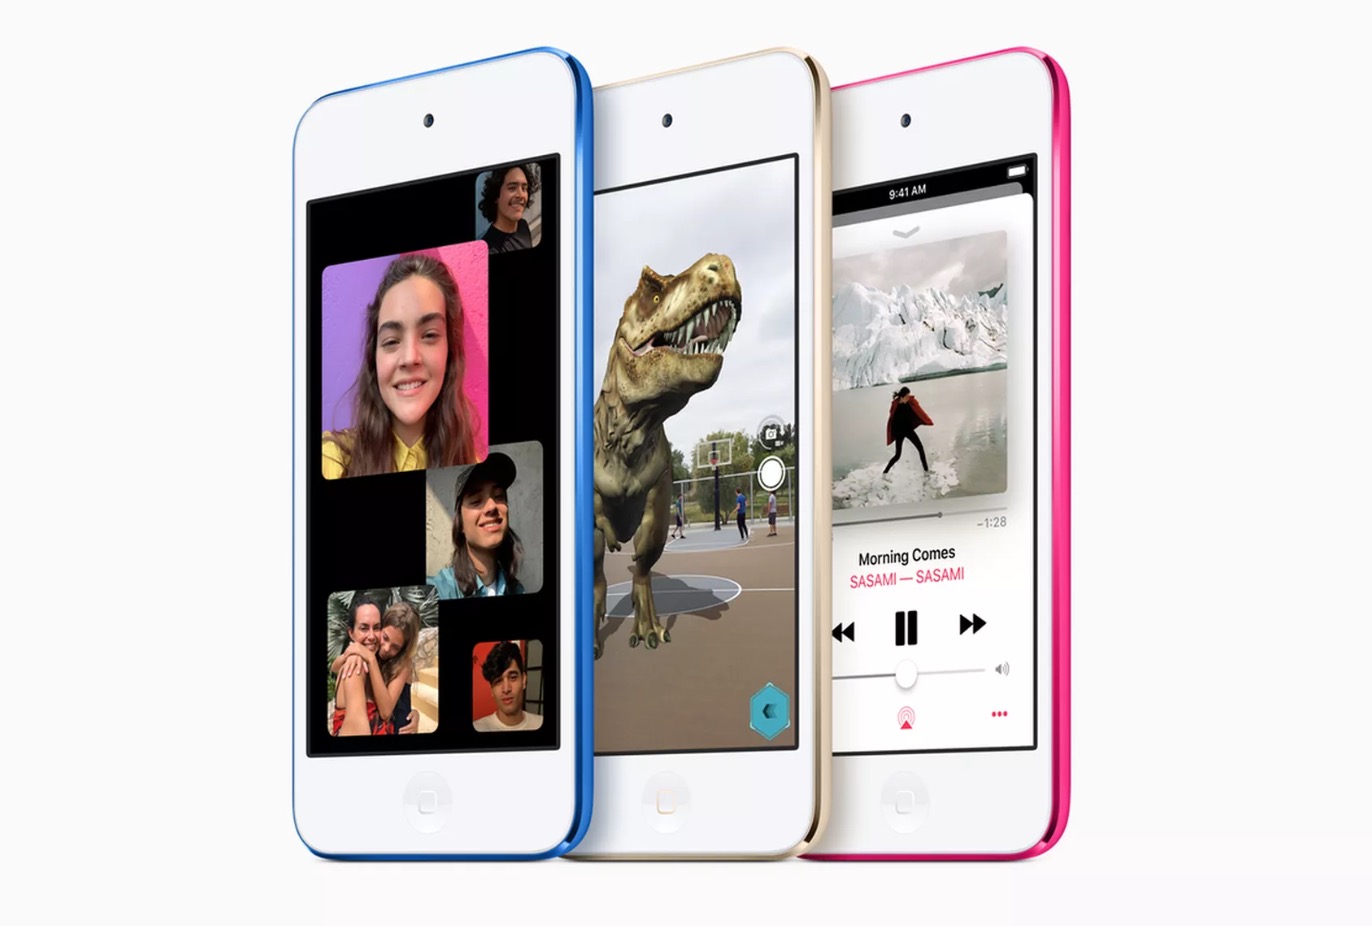 Apple bất ngờ ra mắt
iPod Touch 2019 với thiết kế cũ, chip A10 Fusion, giá từ 199
USD